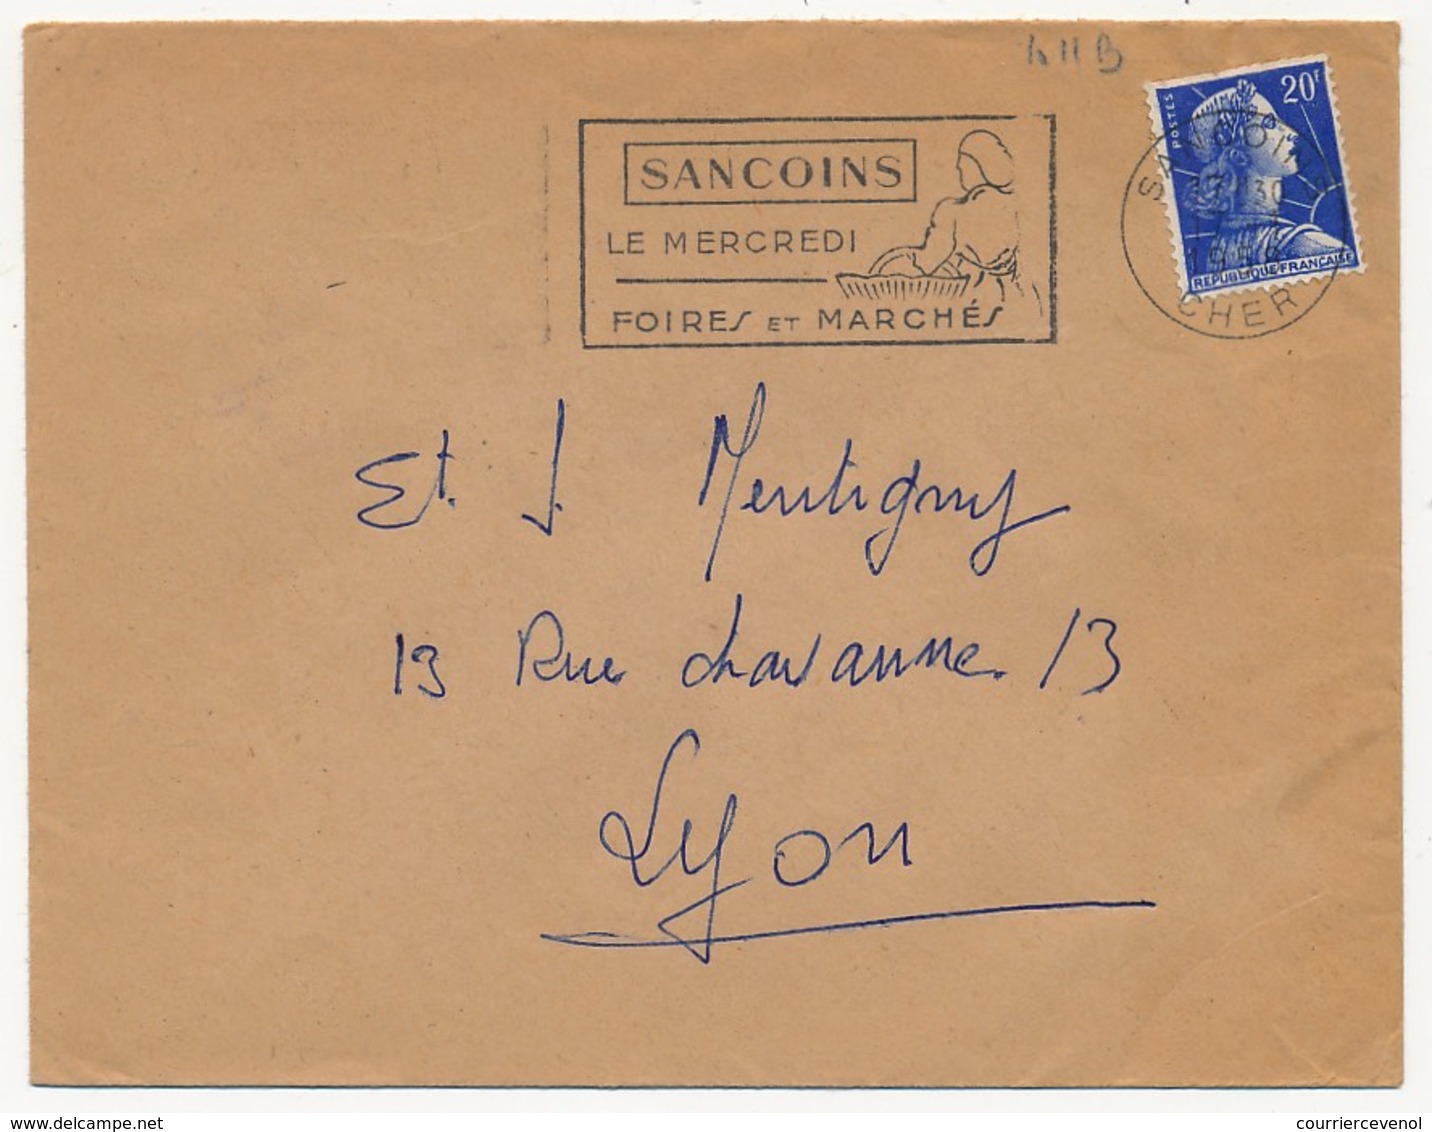 FRANCE - OMEC "SANCOINS - Le Mercredi Foires Et Marchés" Sancoins (Cher) 1958 S/20F Muller - Maschinenstempel (Werbestempel)